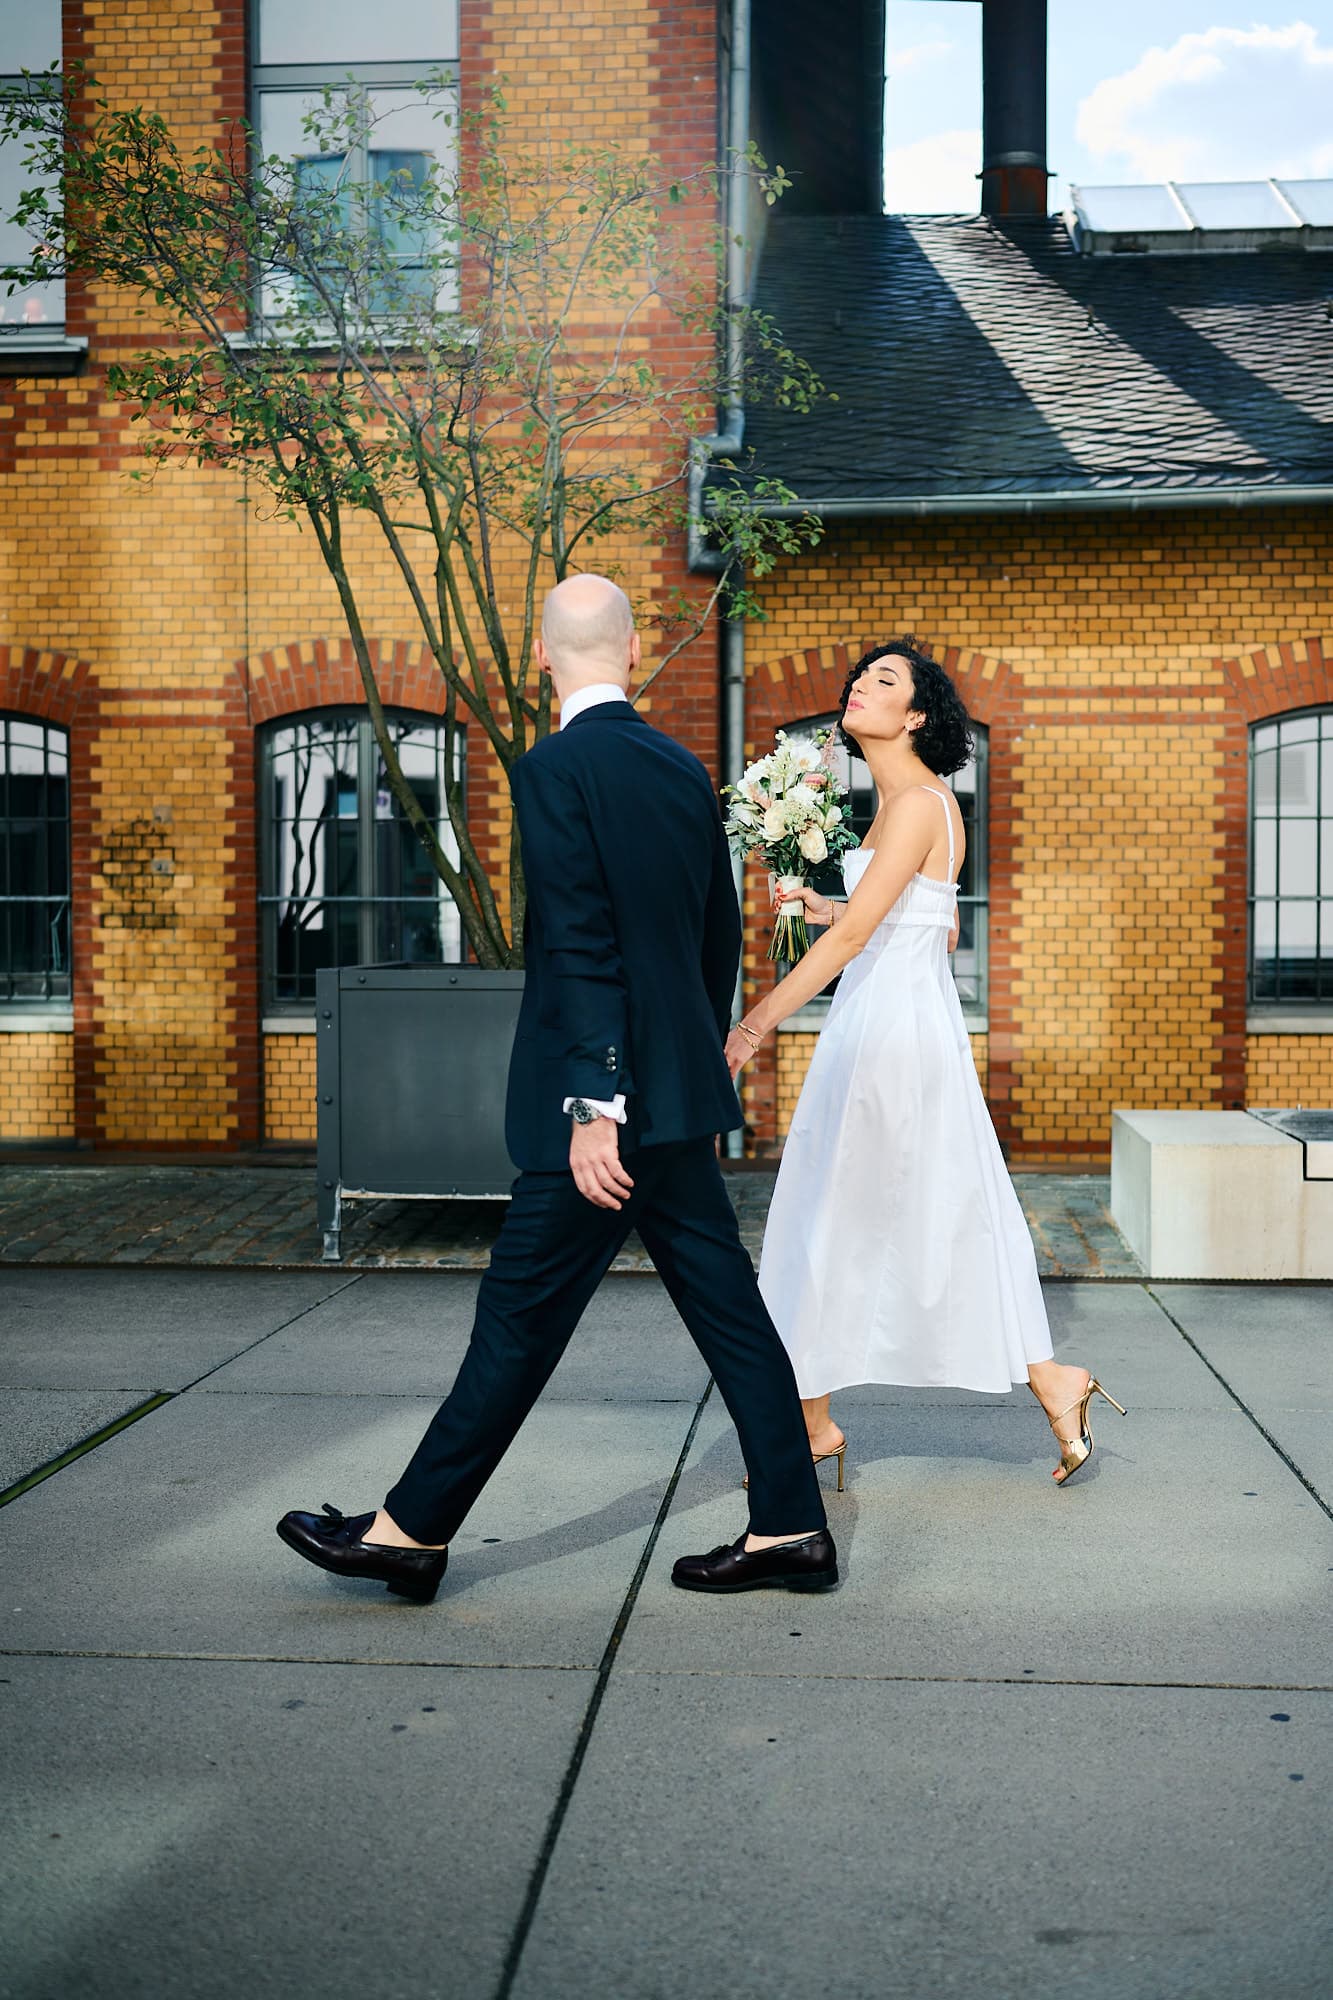 Ein Paar in formeller Kleidung geht auf dem Weg zu einer Hochzeits-Veranstaltung nach draußen, die Frau schaut ihr über die Schulter und der Mann geht voran.